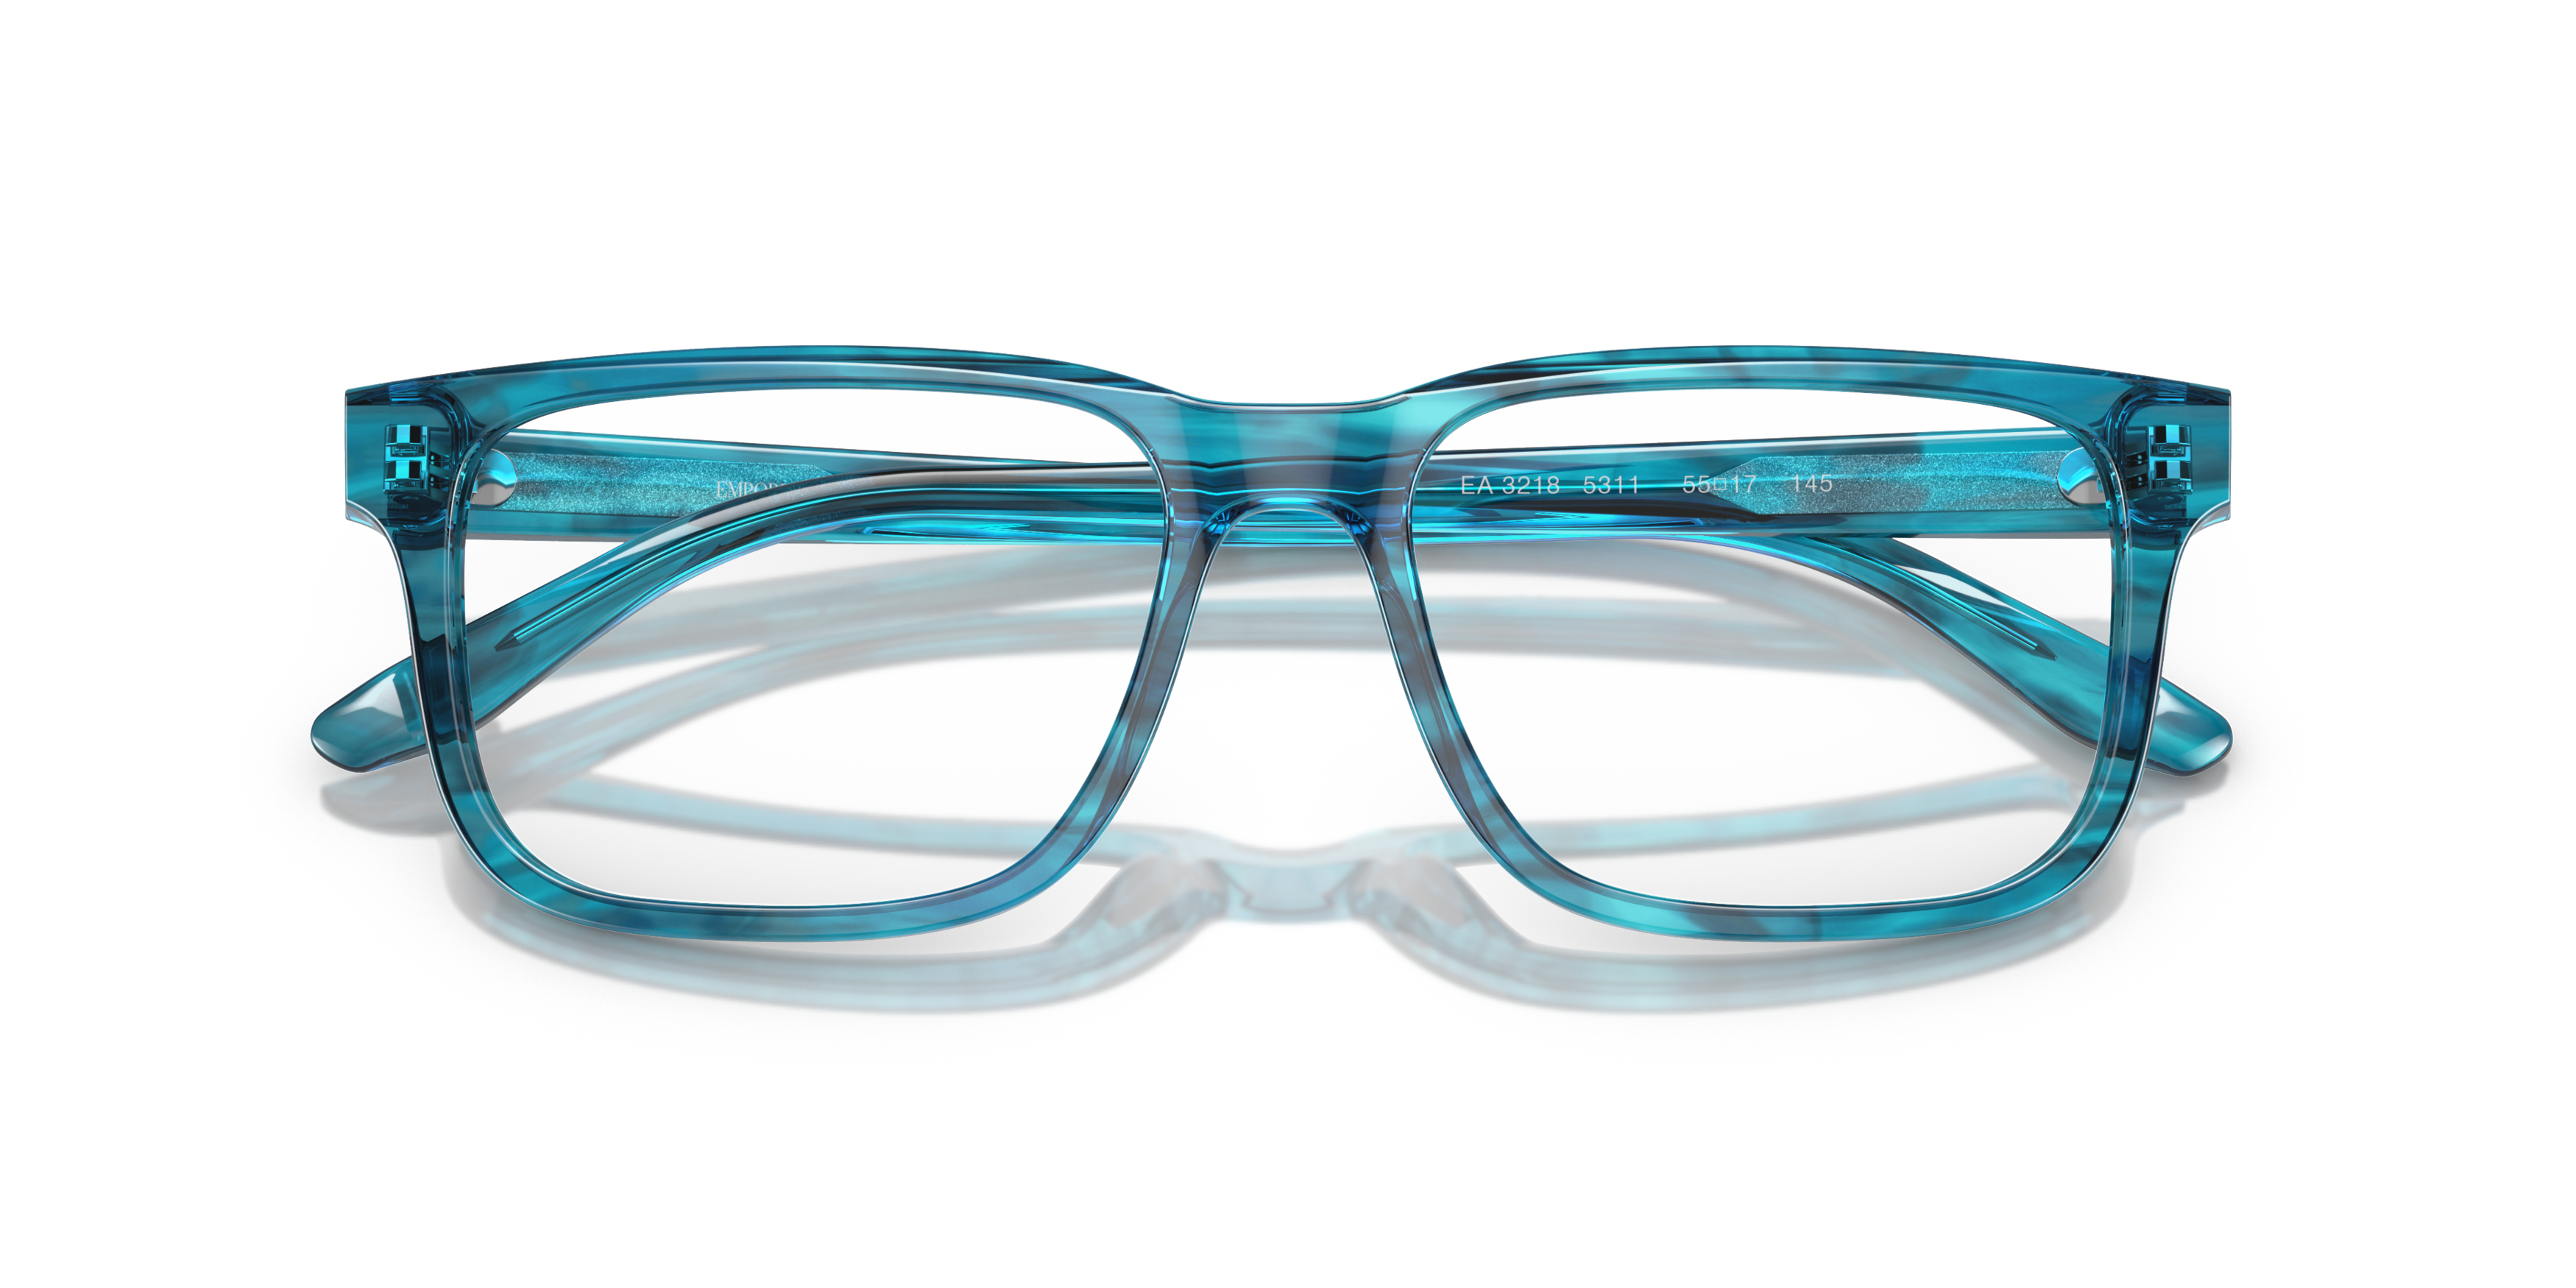 Folded Emporio Armani EA 3218 (5311) Glasses Transparent / Blue